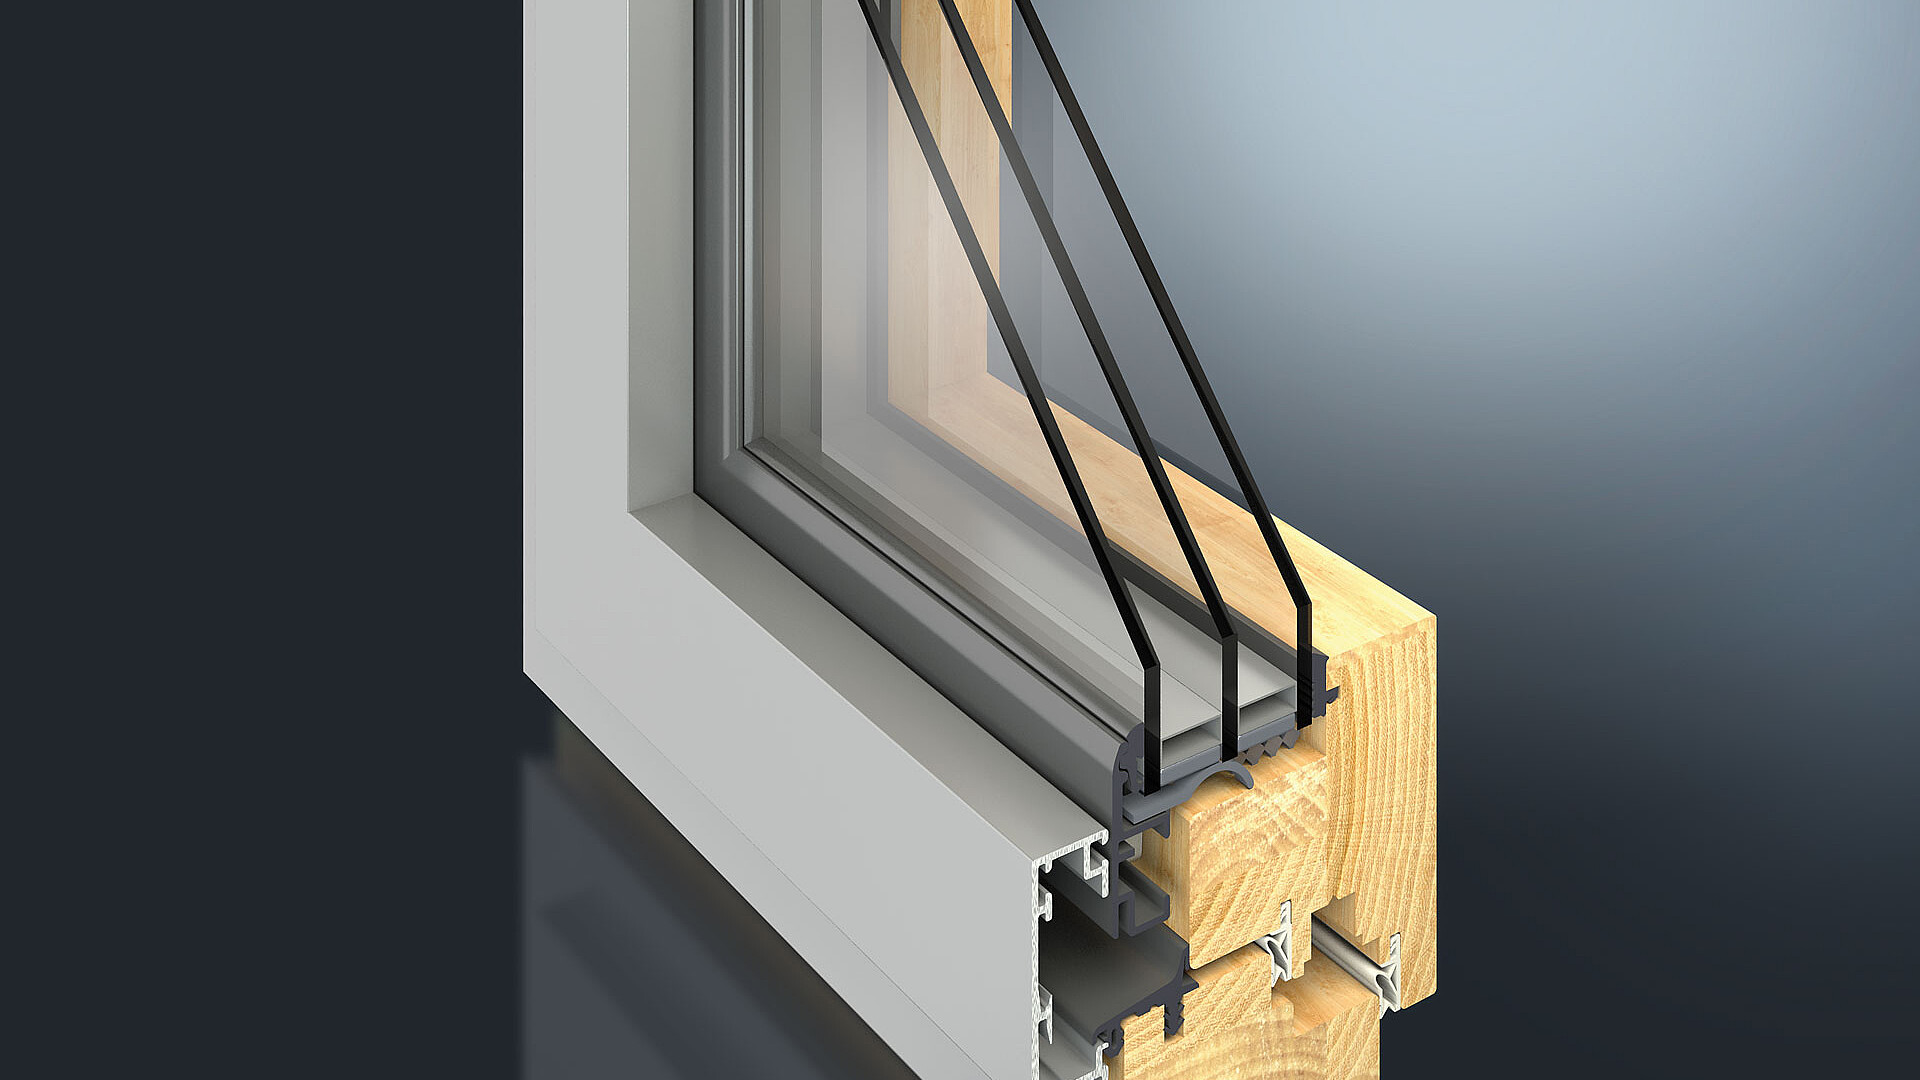 Durch die reduzierte Ansichtsbreite von 50 mm ergeben sich völlig neue Möglichkeiten bezüglich Technik und Optik. Das GUTMANN MIRA contour integral 50 Holz-Aluminium Fenster- & Tür-System hat eine schmale Rahmenansichten mit halb verdeckt liegendem Flügel.